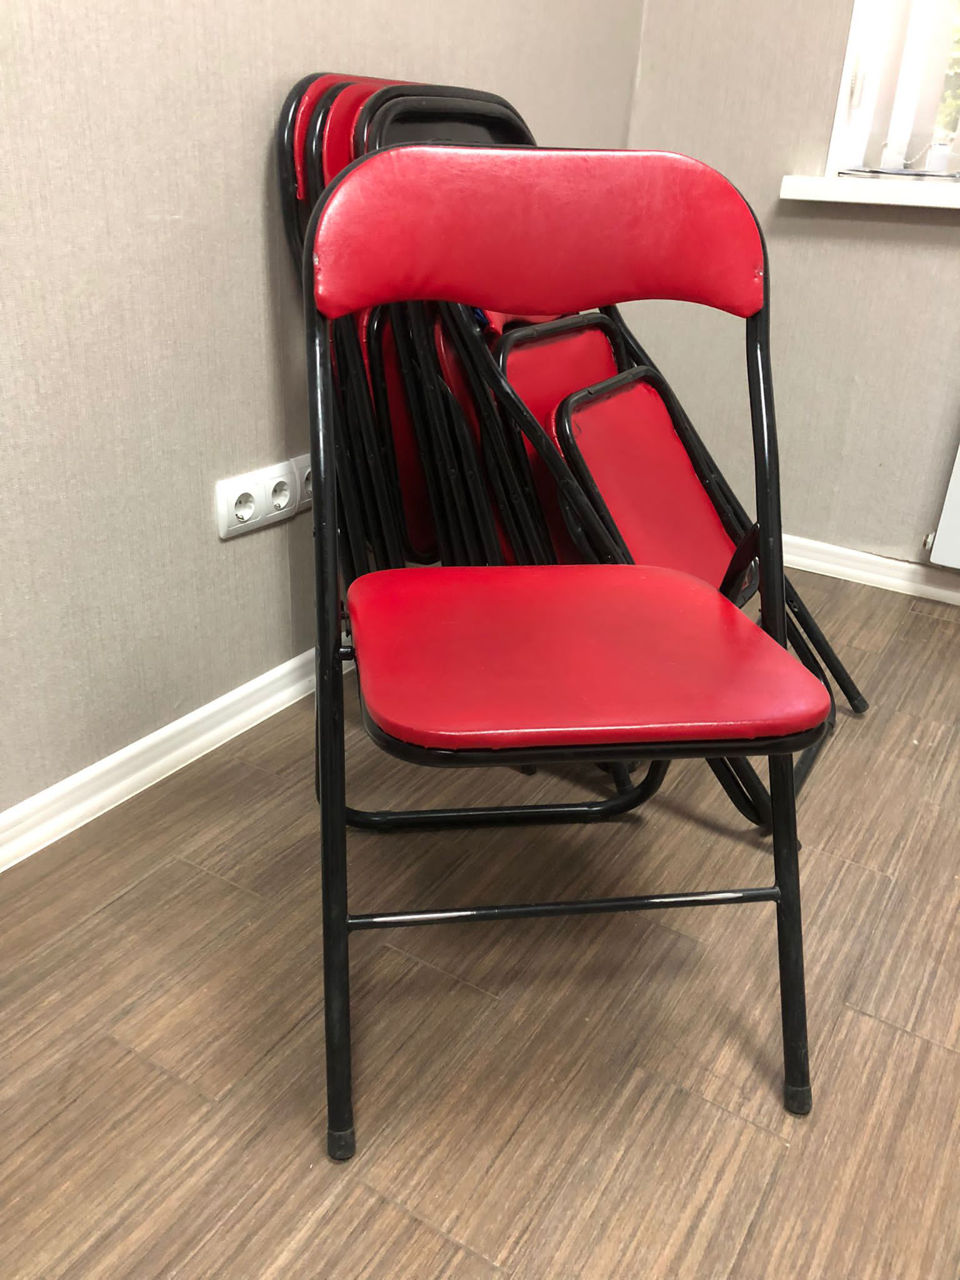 Столы и стулья для салона красоты